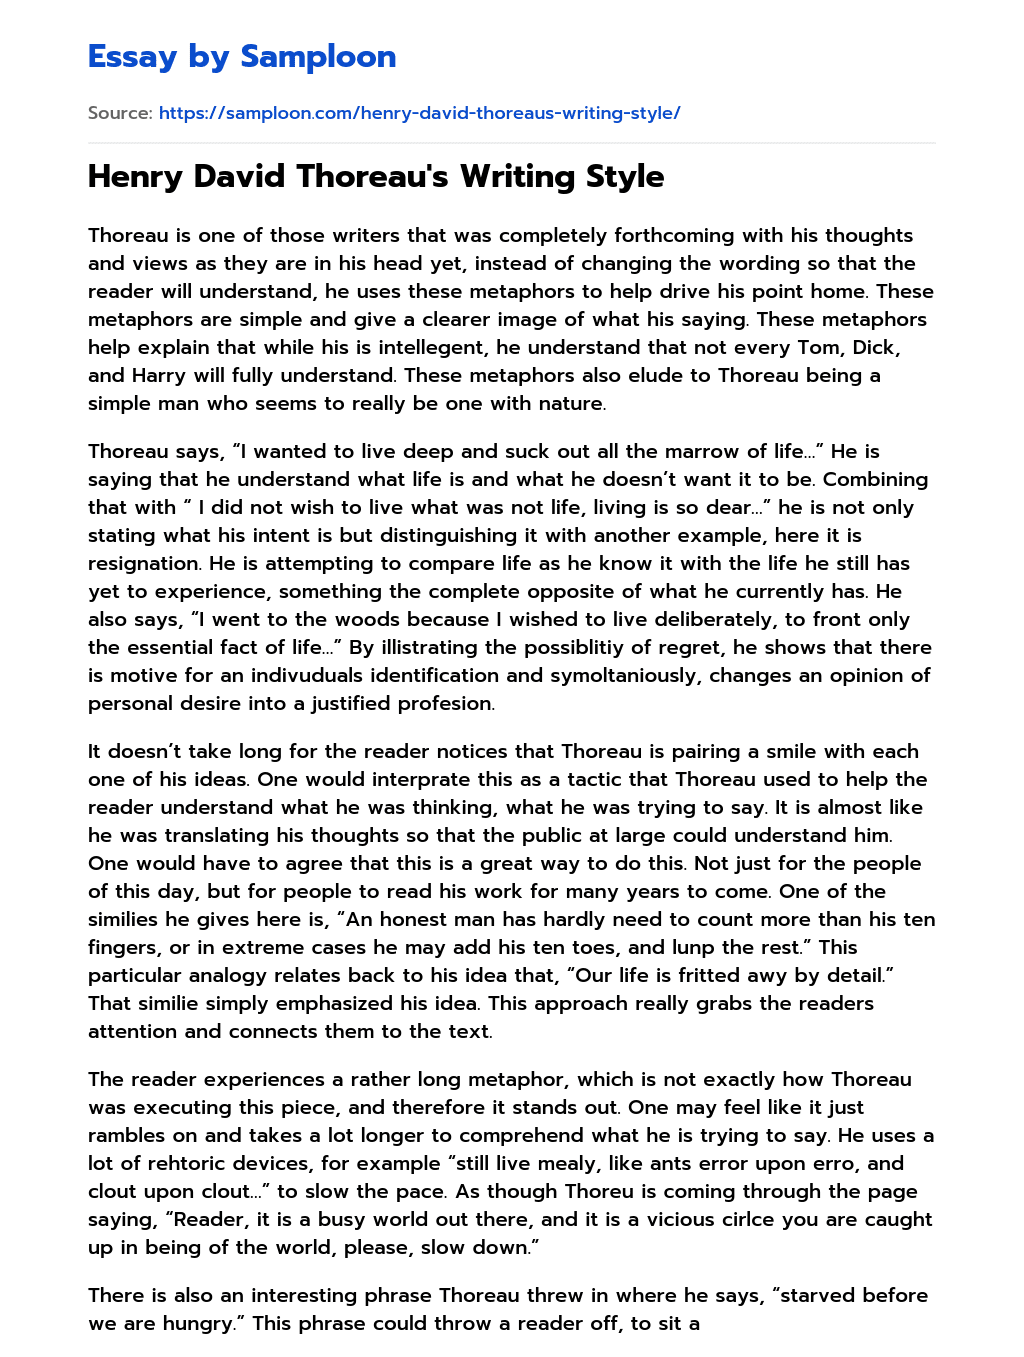 Henry David Thoreau’s Writing Style essay